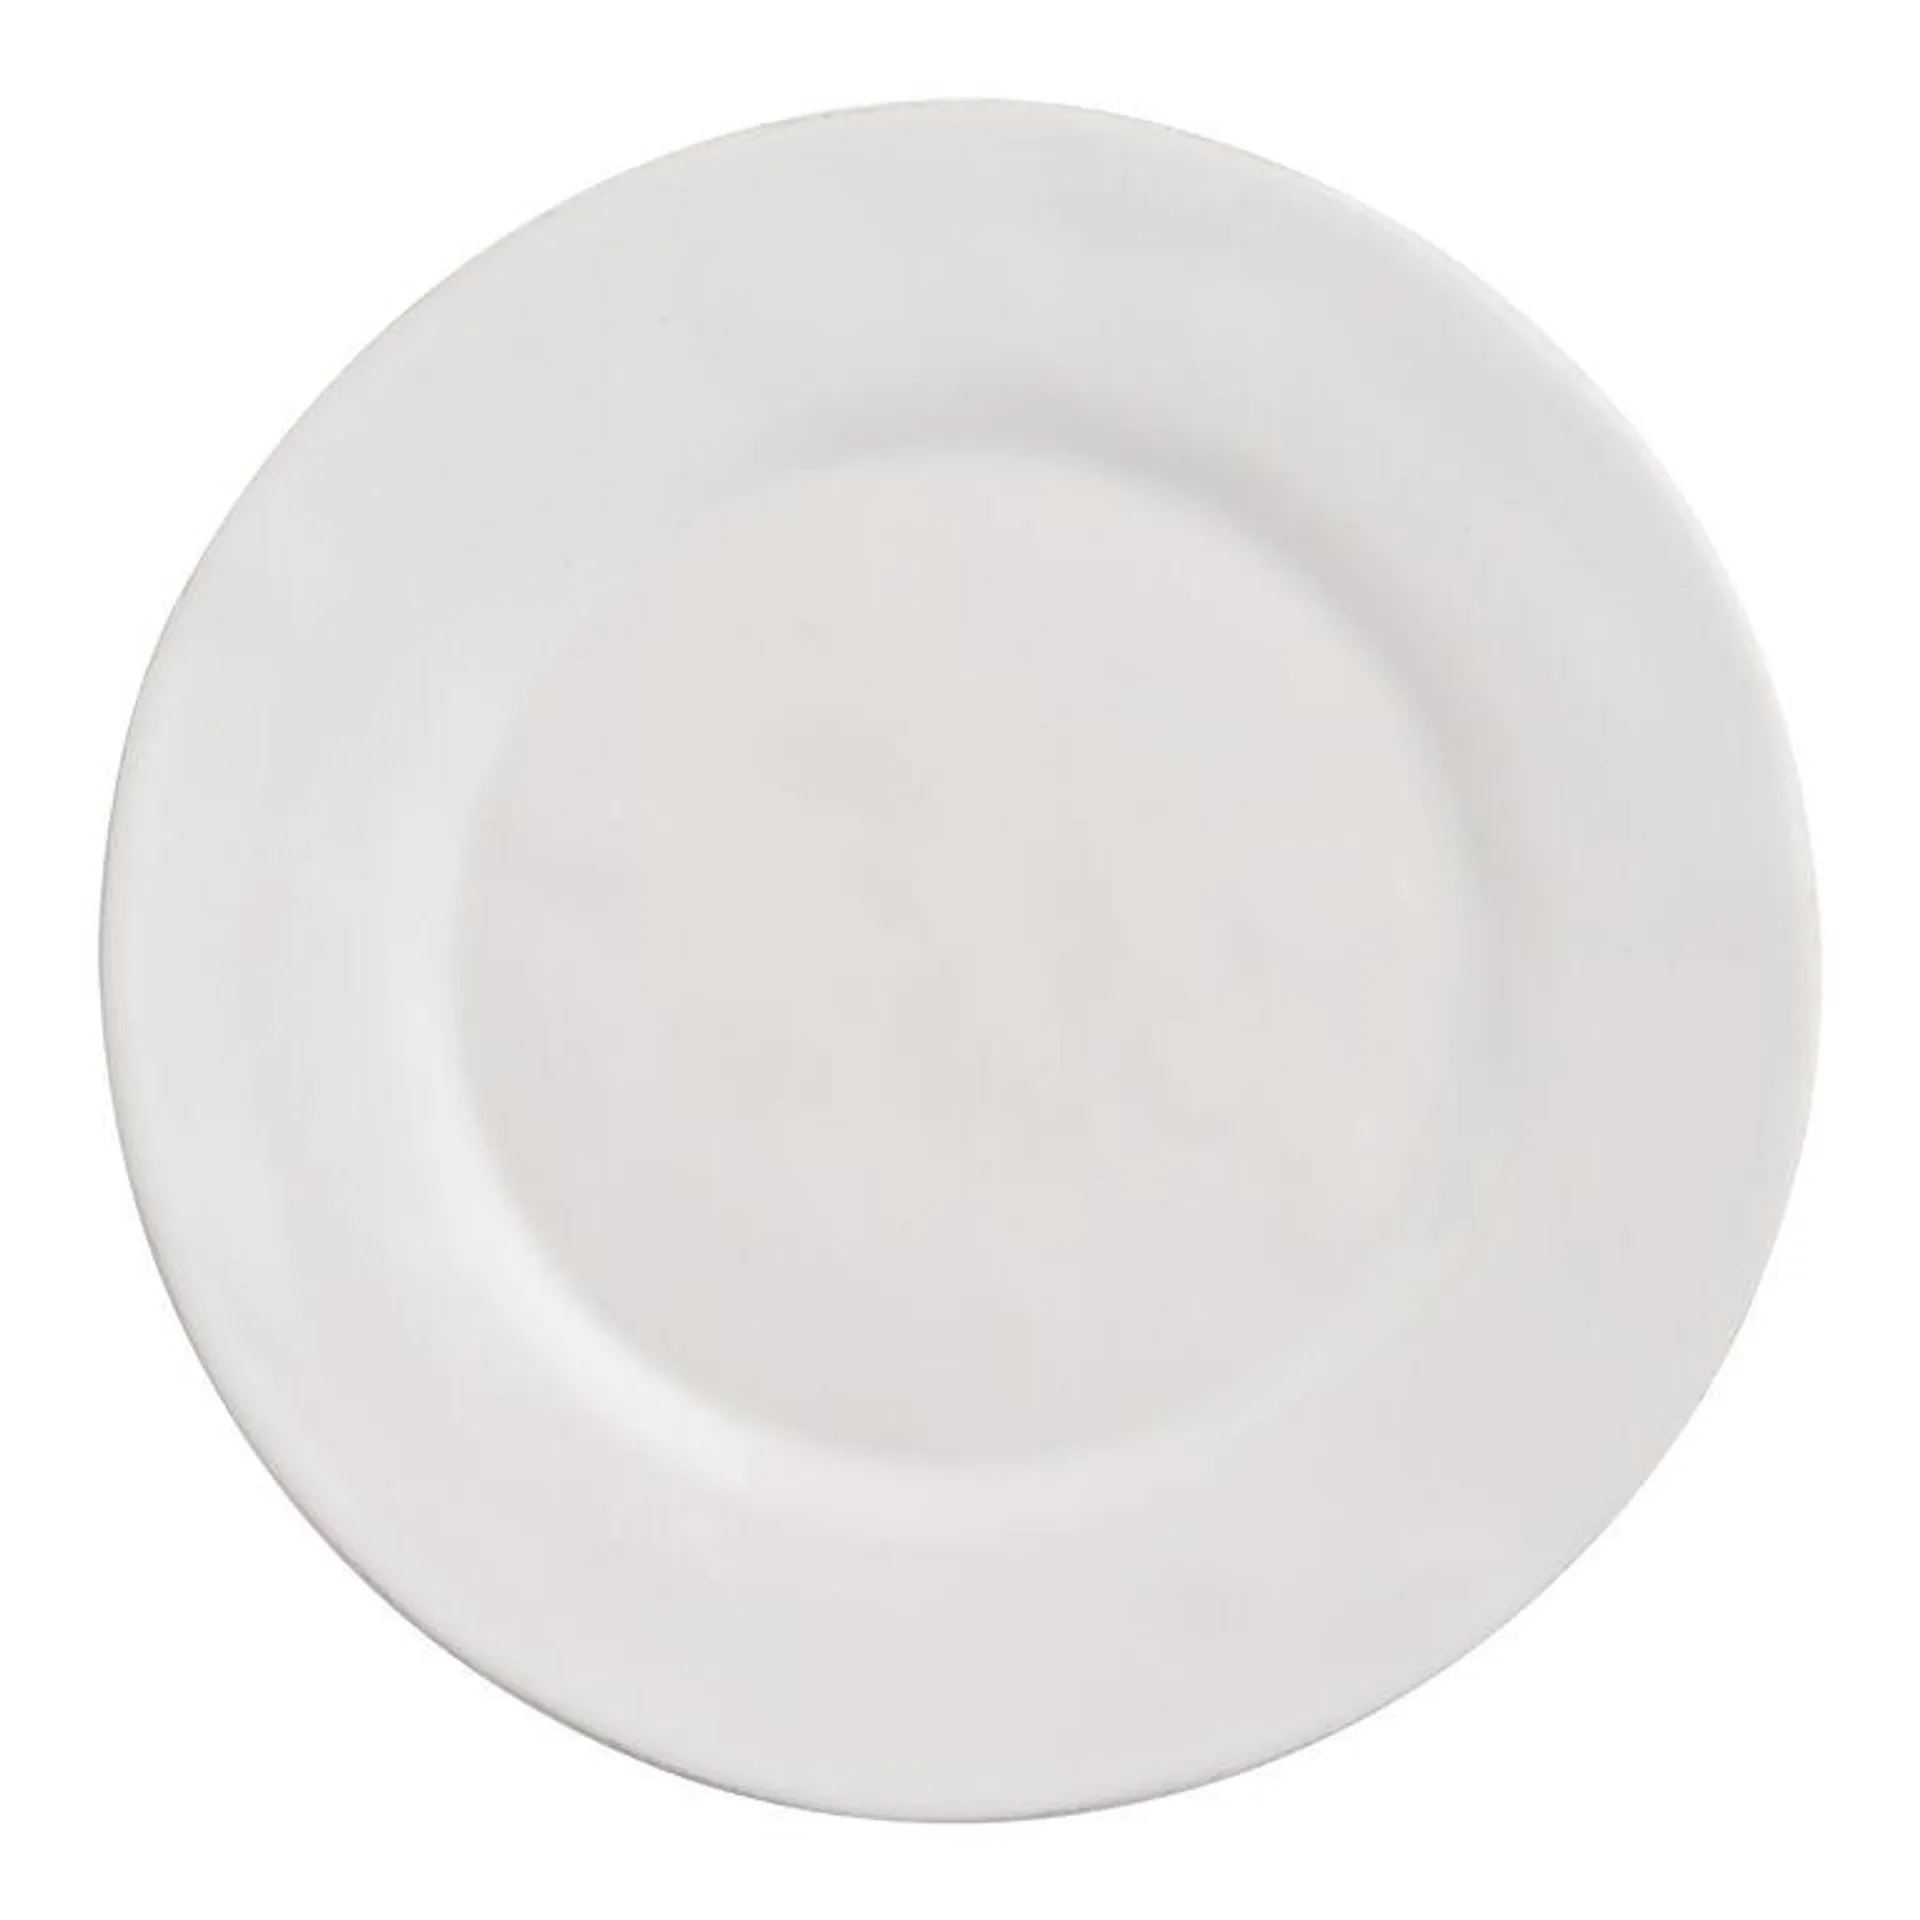 Prado White Reactive Glaze Salad Plate